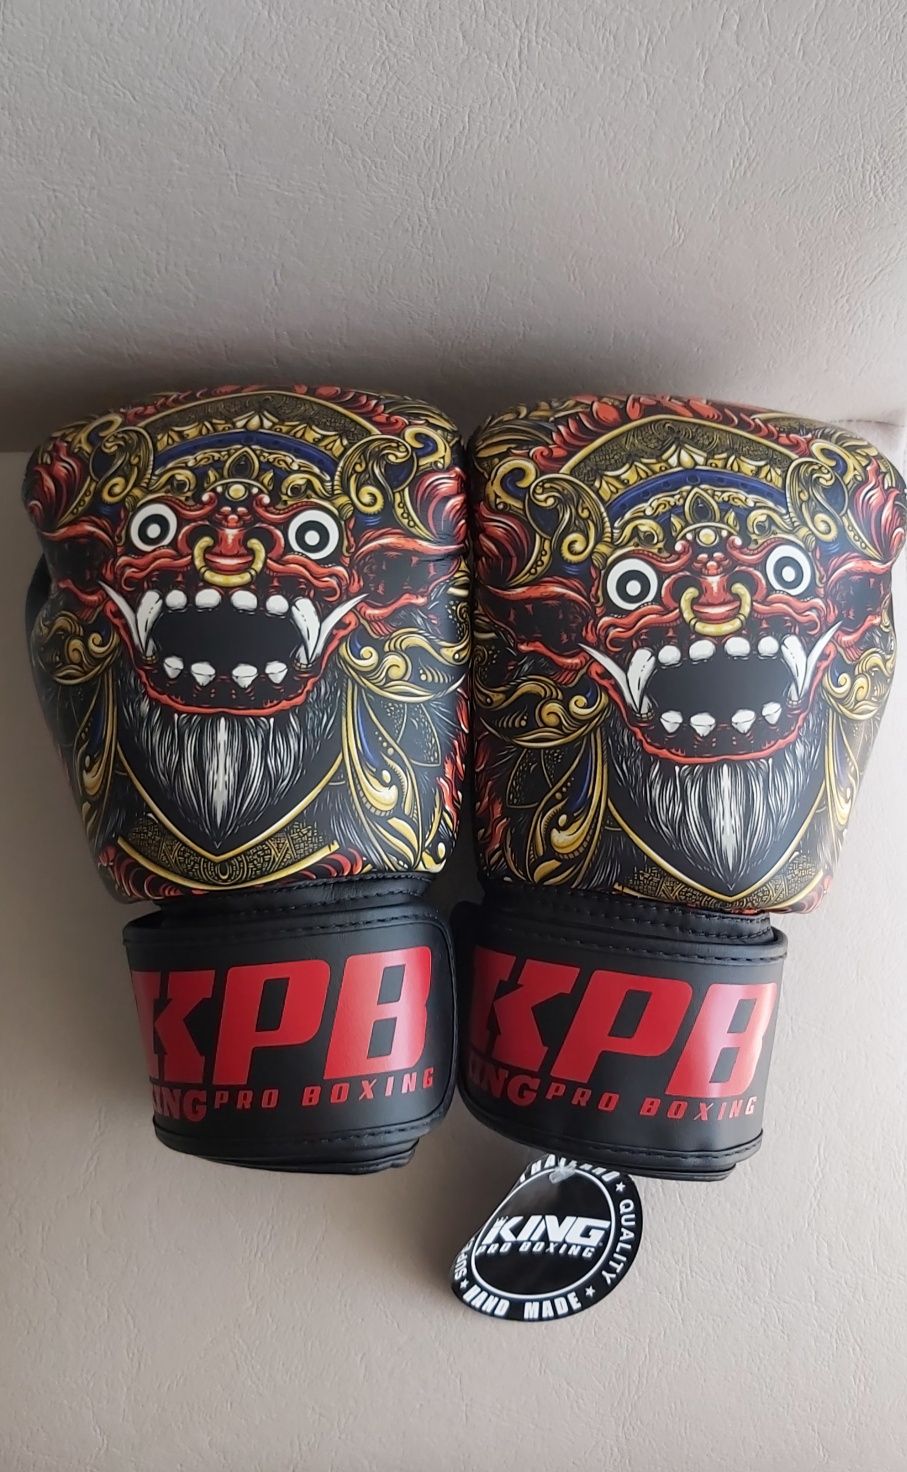 Manusi box/kickboxing/muay thai King 14 oz